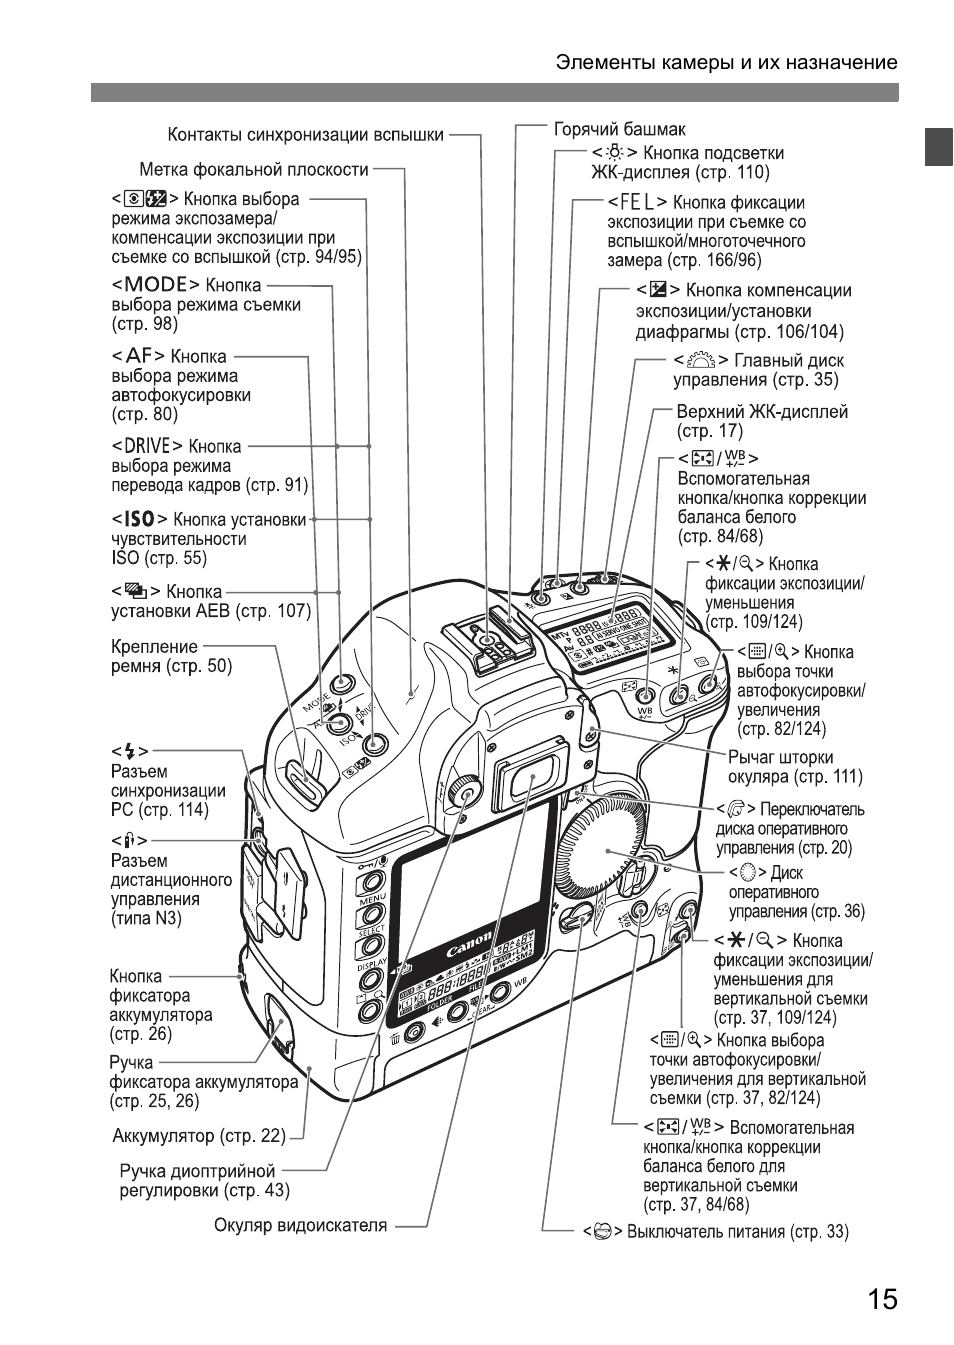 Инструкция по эксплуатации Canon EOS 1D Mark II N | Страница 15 / 196